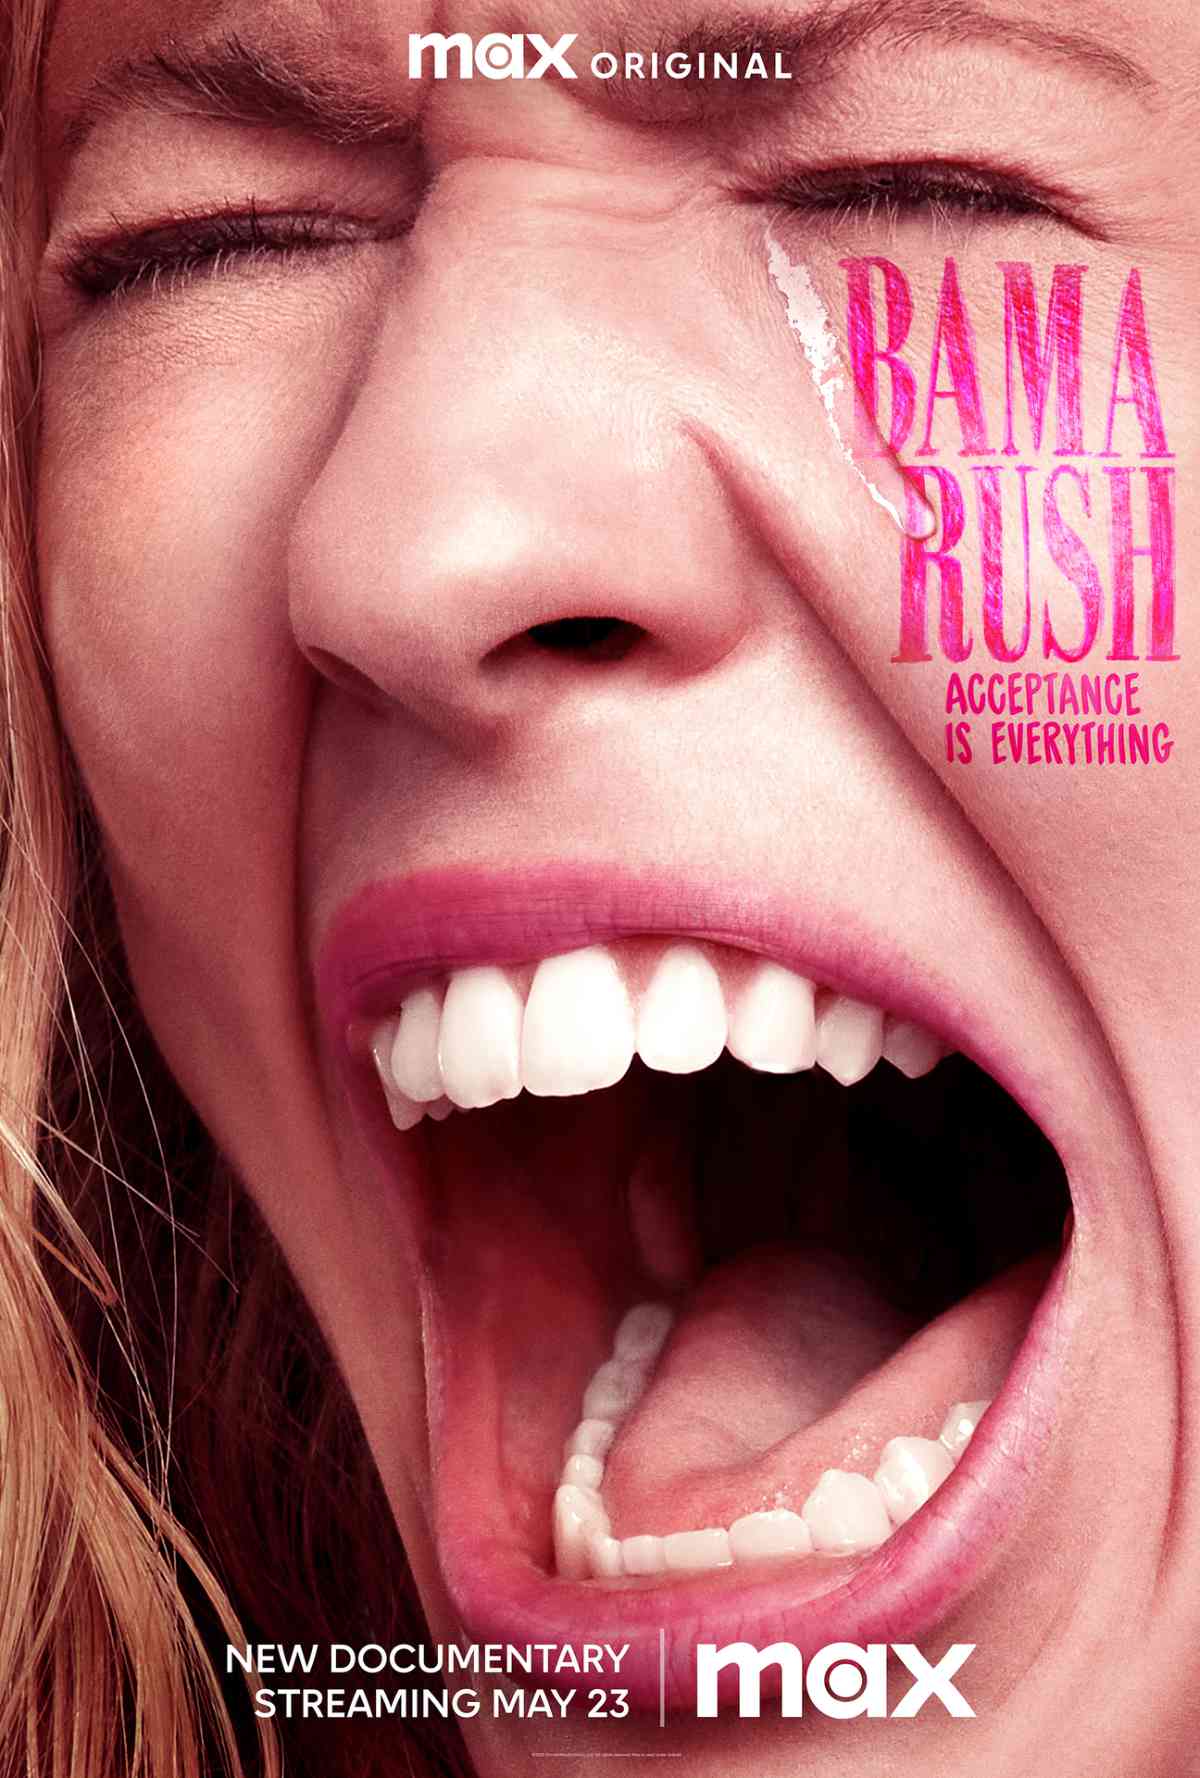 Bama Rush Documentary Coming to Max